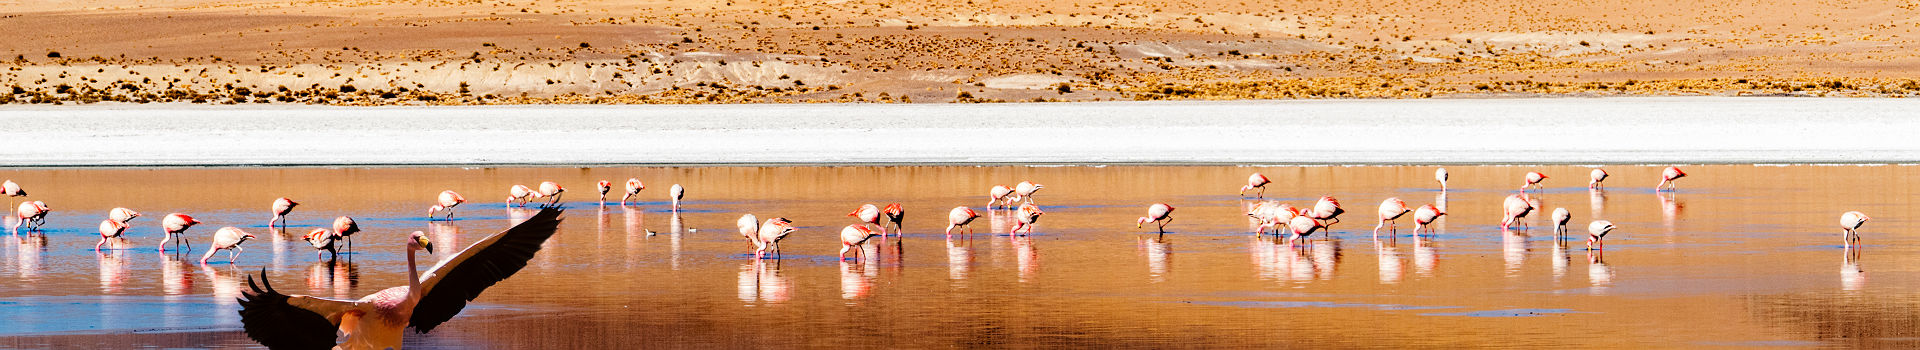 Chili- Groupe de flamants roses dans le désert d'Atacama